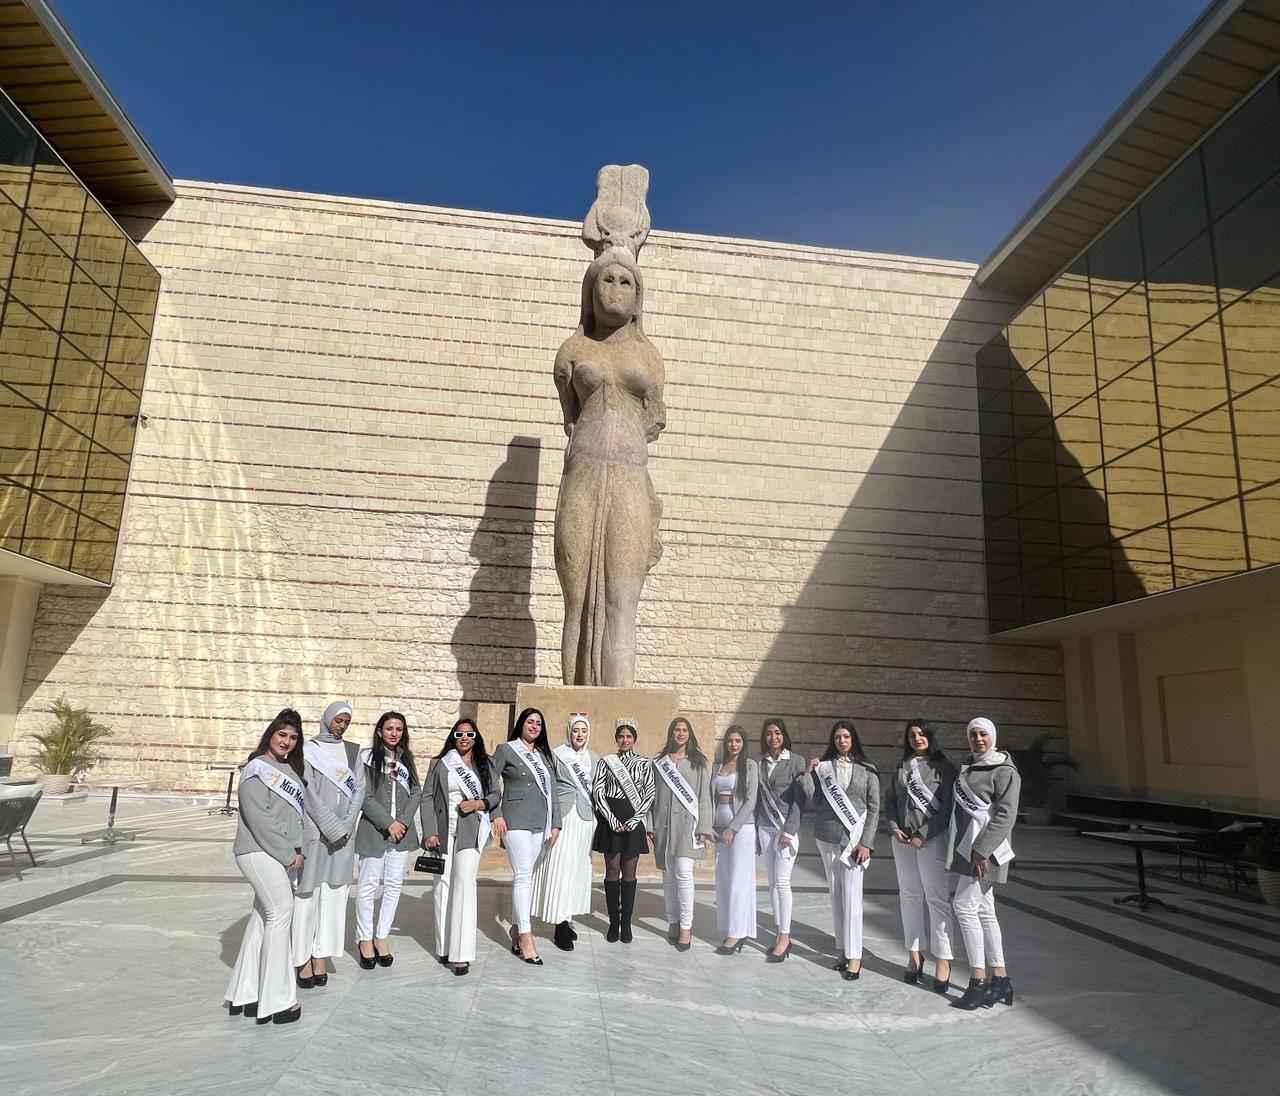 ملكات جمال البحر المتوسط في زيارة تعريفية للمتحف اليوناني الروماني بالإسكندرية